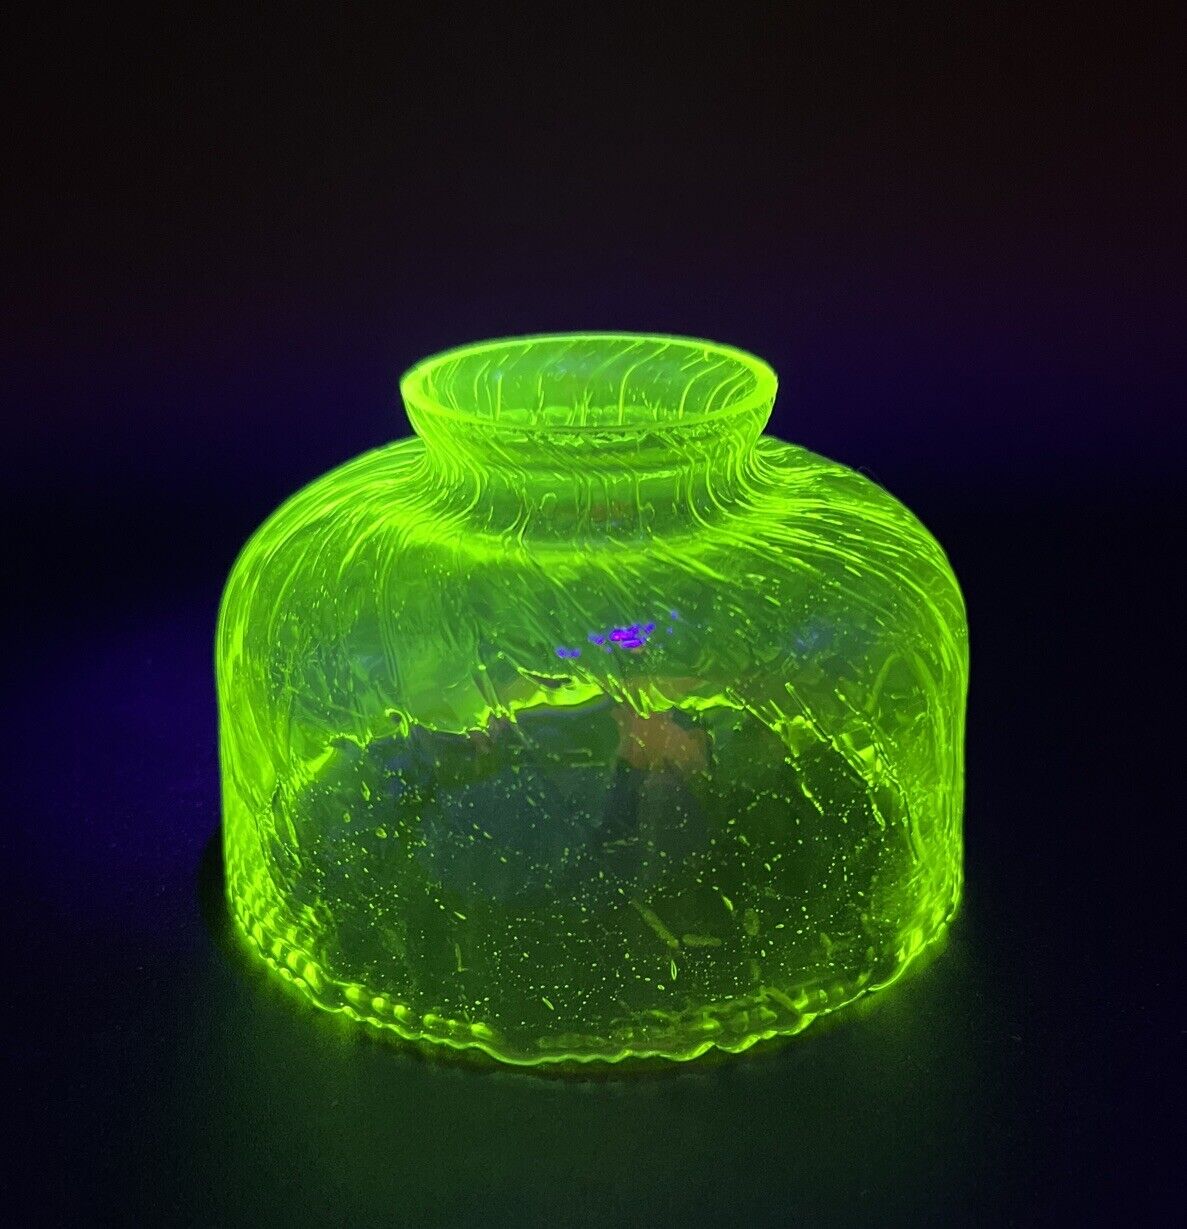 ANTIQUE URANIUM VASELINE GLASS LAMP SHADE Swirl Glass Ruffle Edge  5”x 3.25”